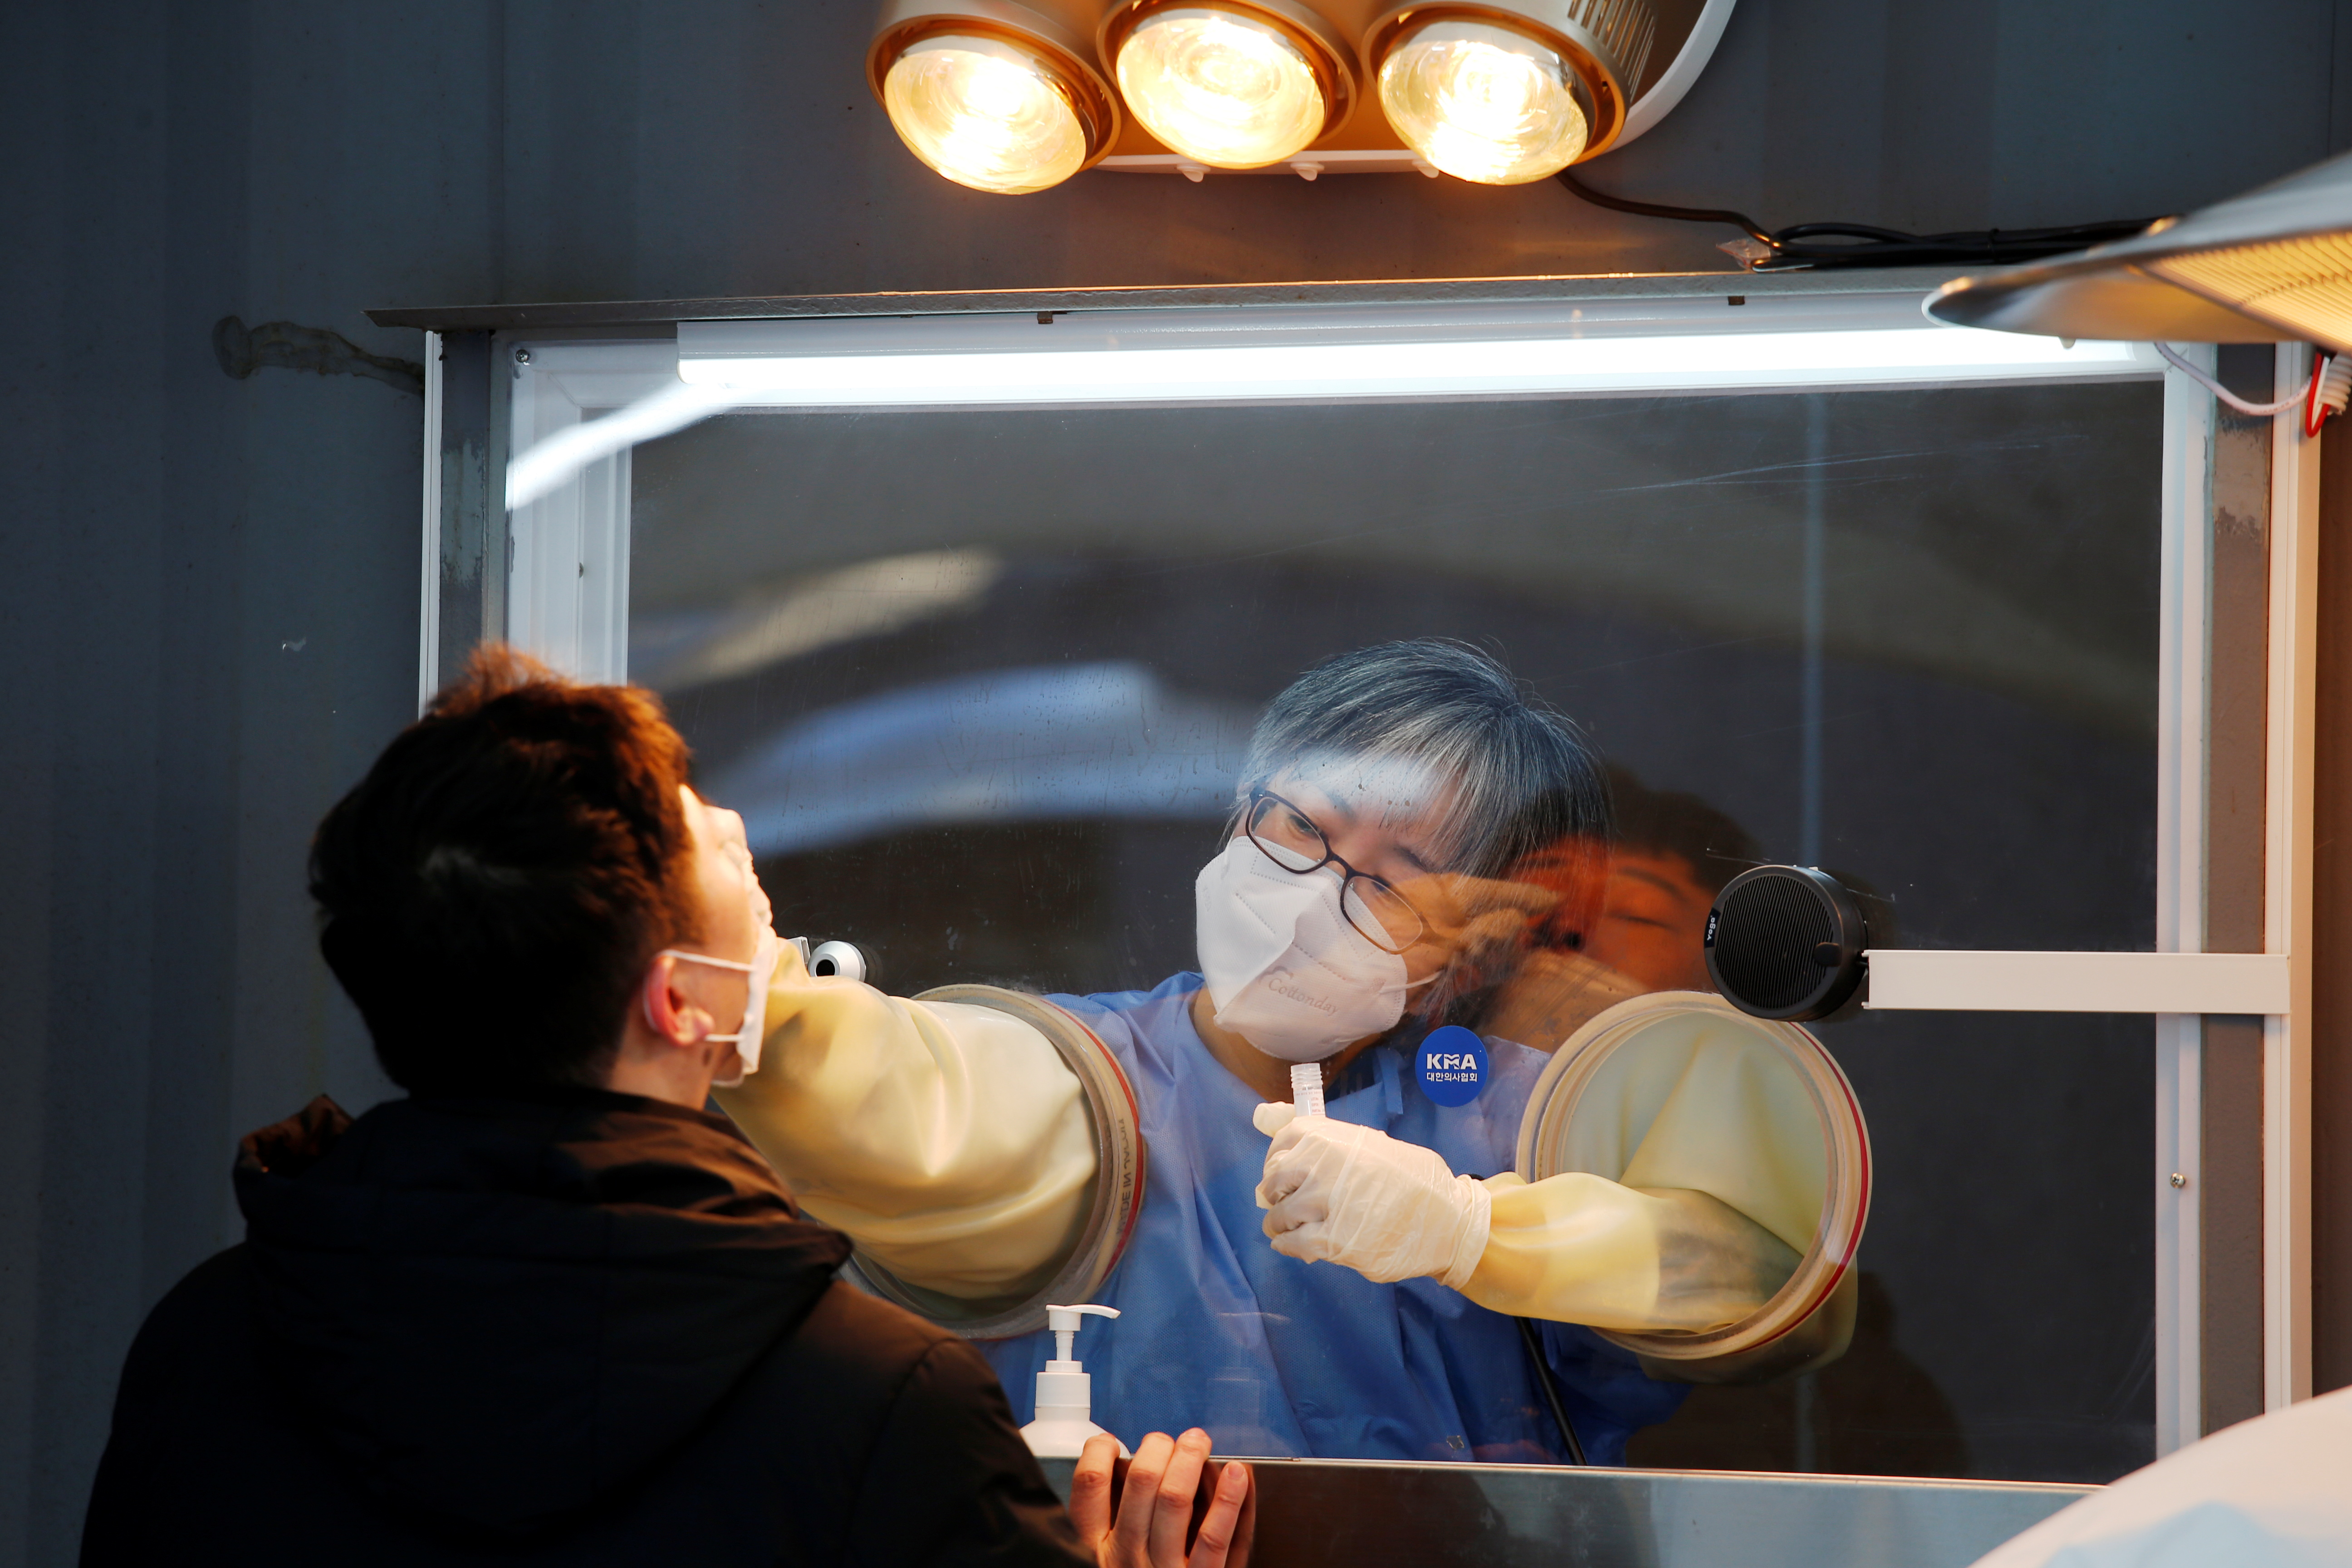 Corea del Sur fue el país con el mejor plan de pruebas y localización de contactos estrechos de coronavirus (REUTERS/Heo Ran)